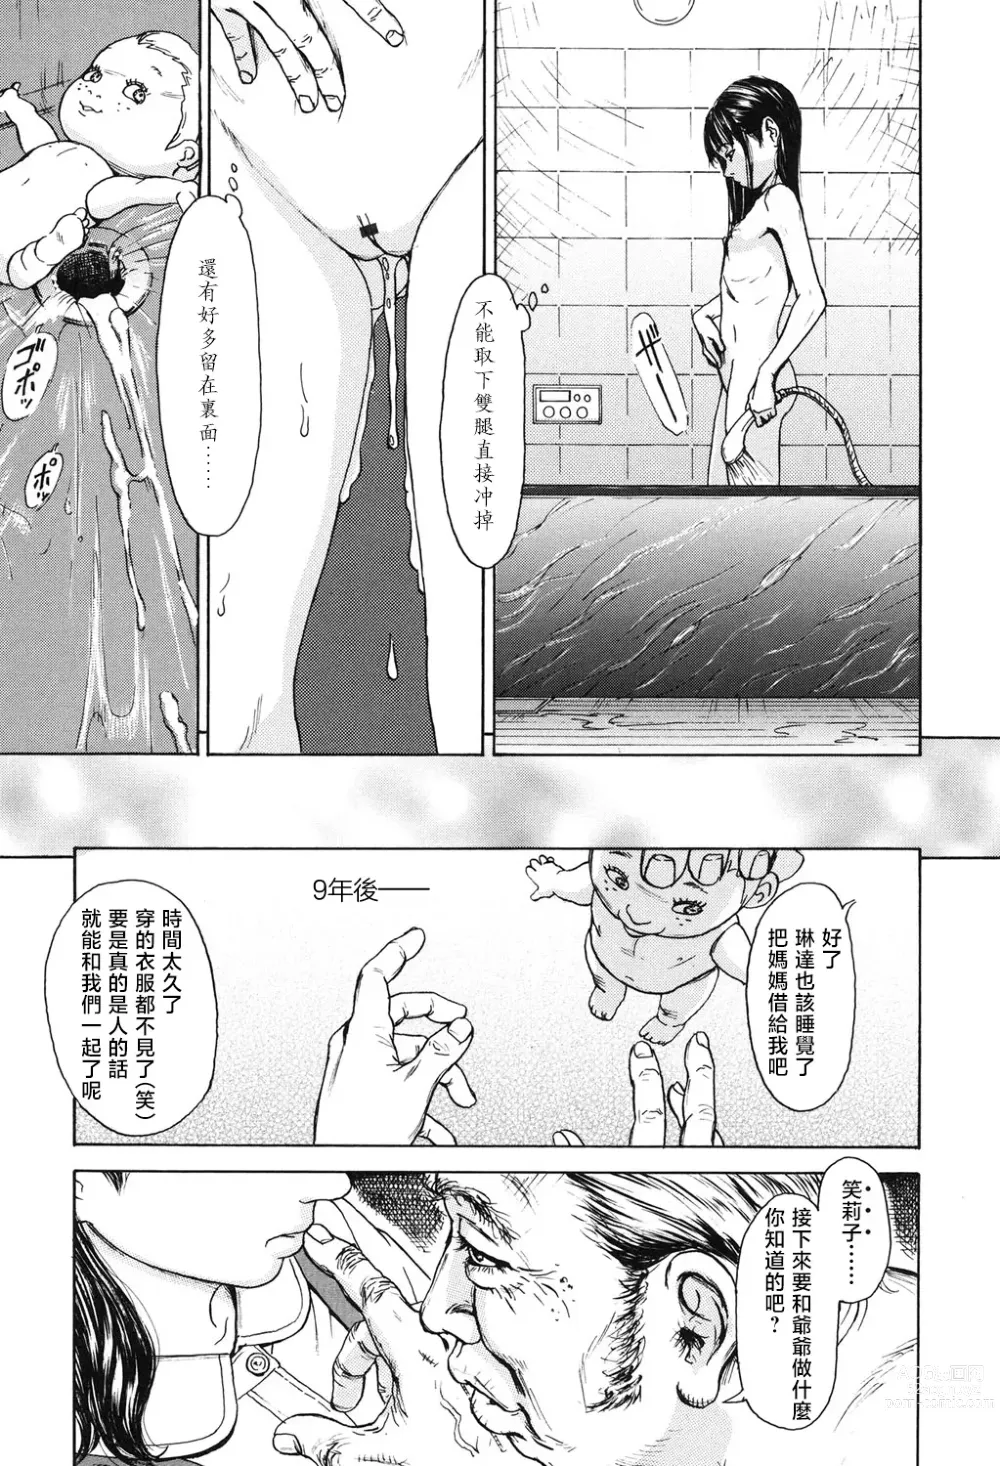 Page 69 of manga Sobakasu Linda